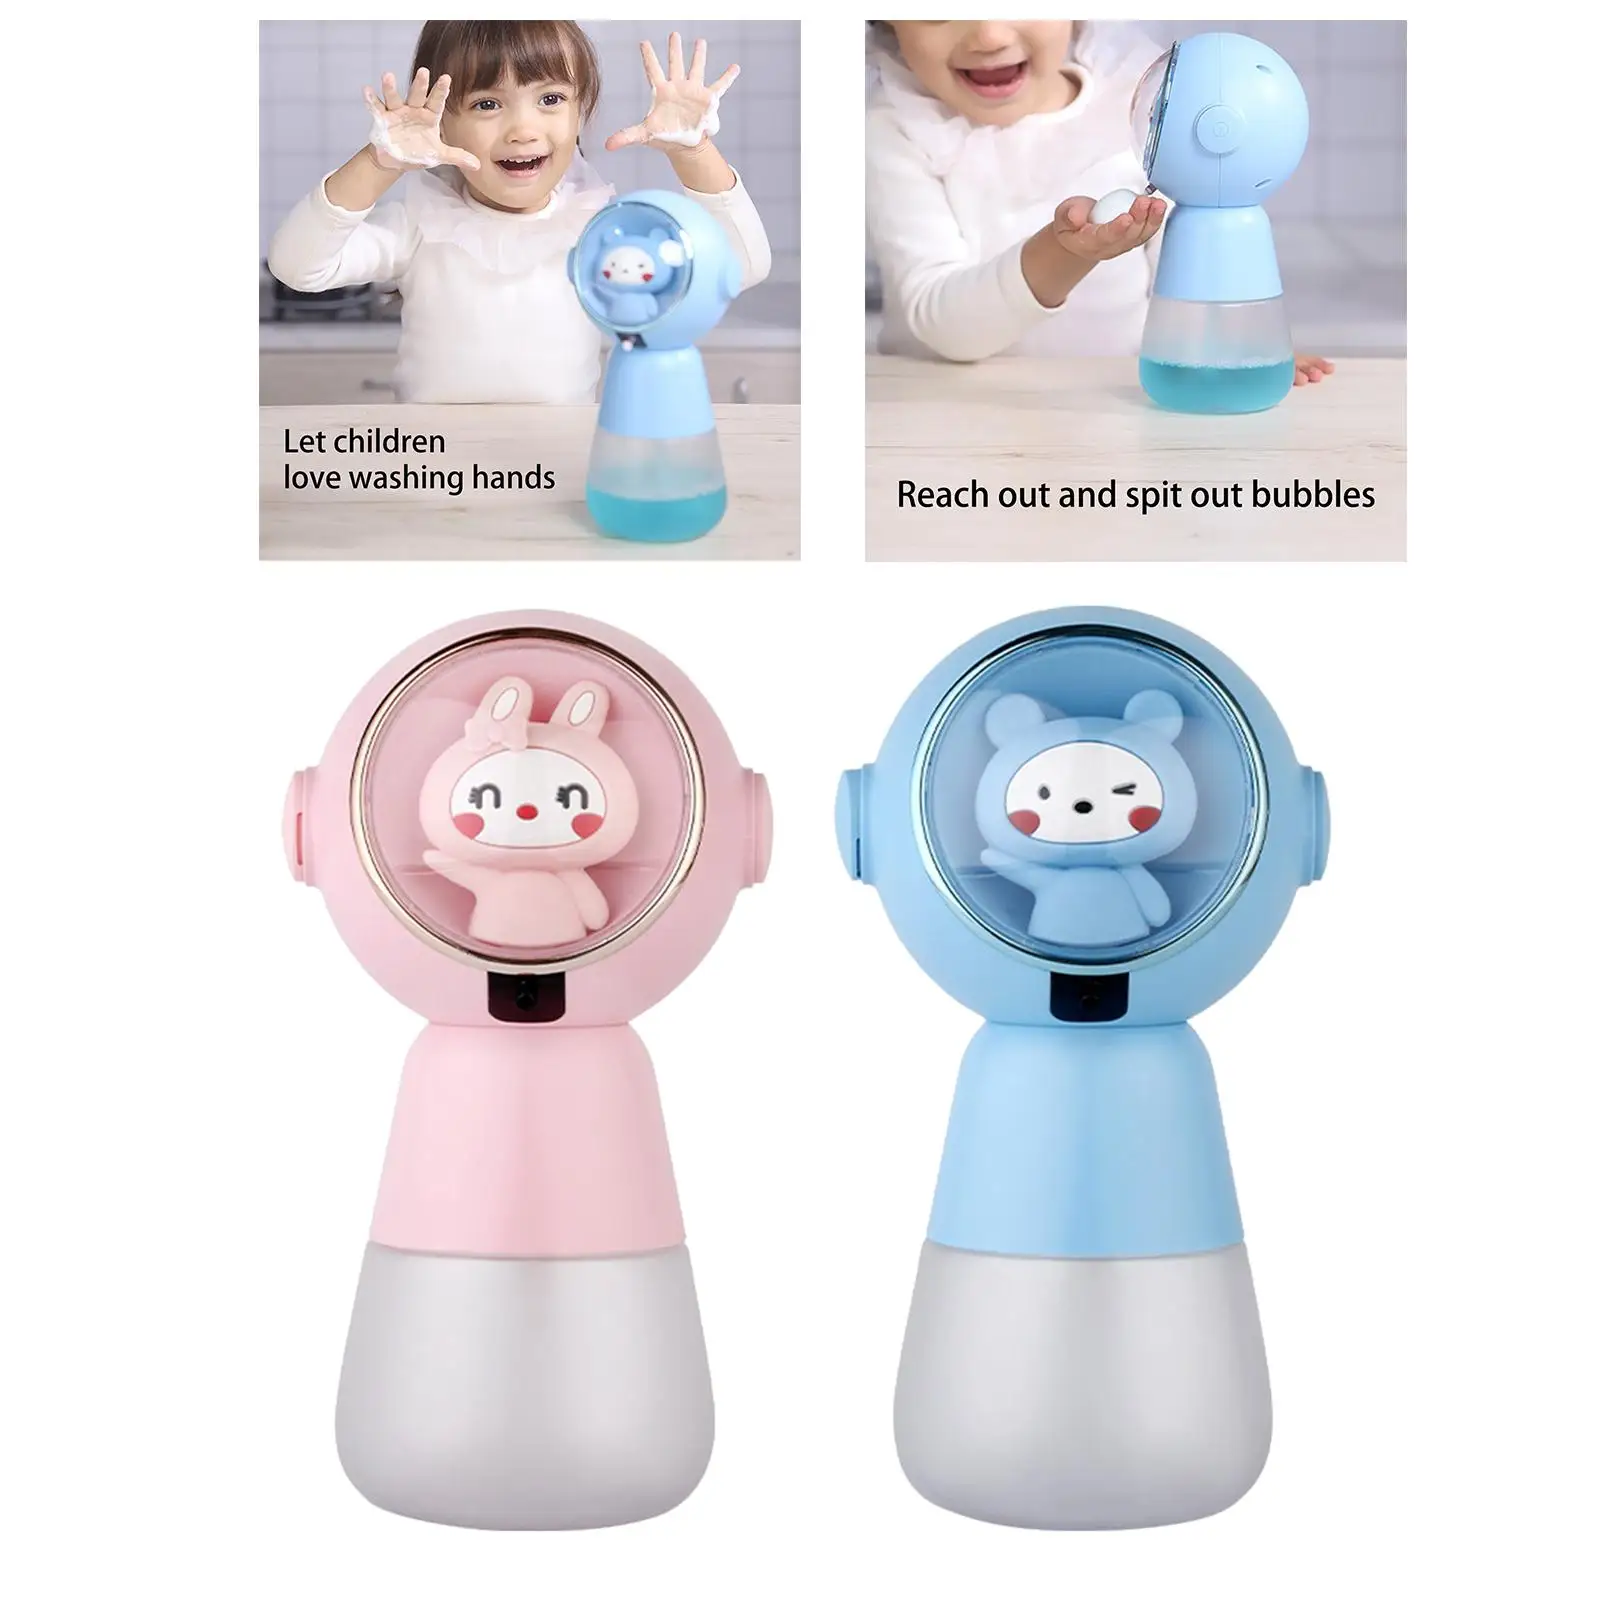 Cute Automatic Liquid Soap Dispenser Rechargable Sensor Non Touch Touchless Soap Dispensers for Countertop kitchen Children